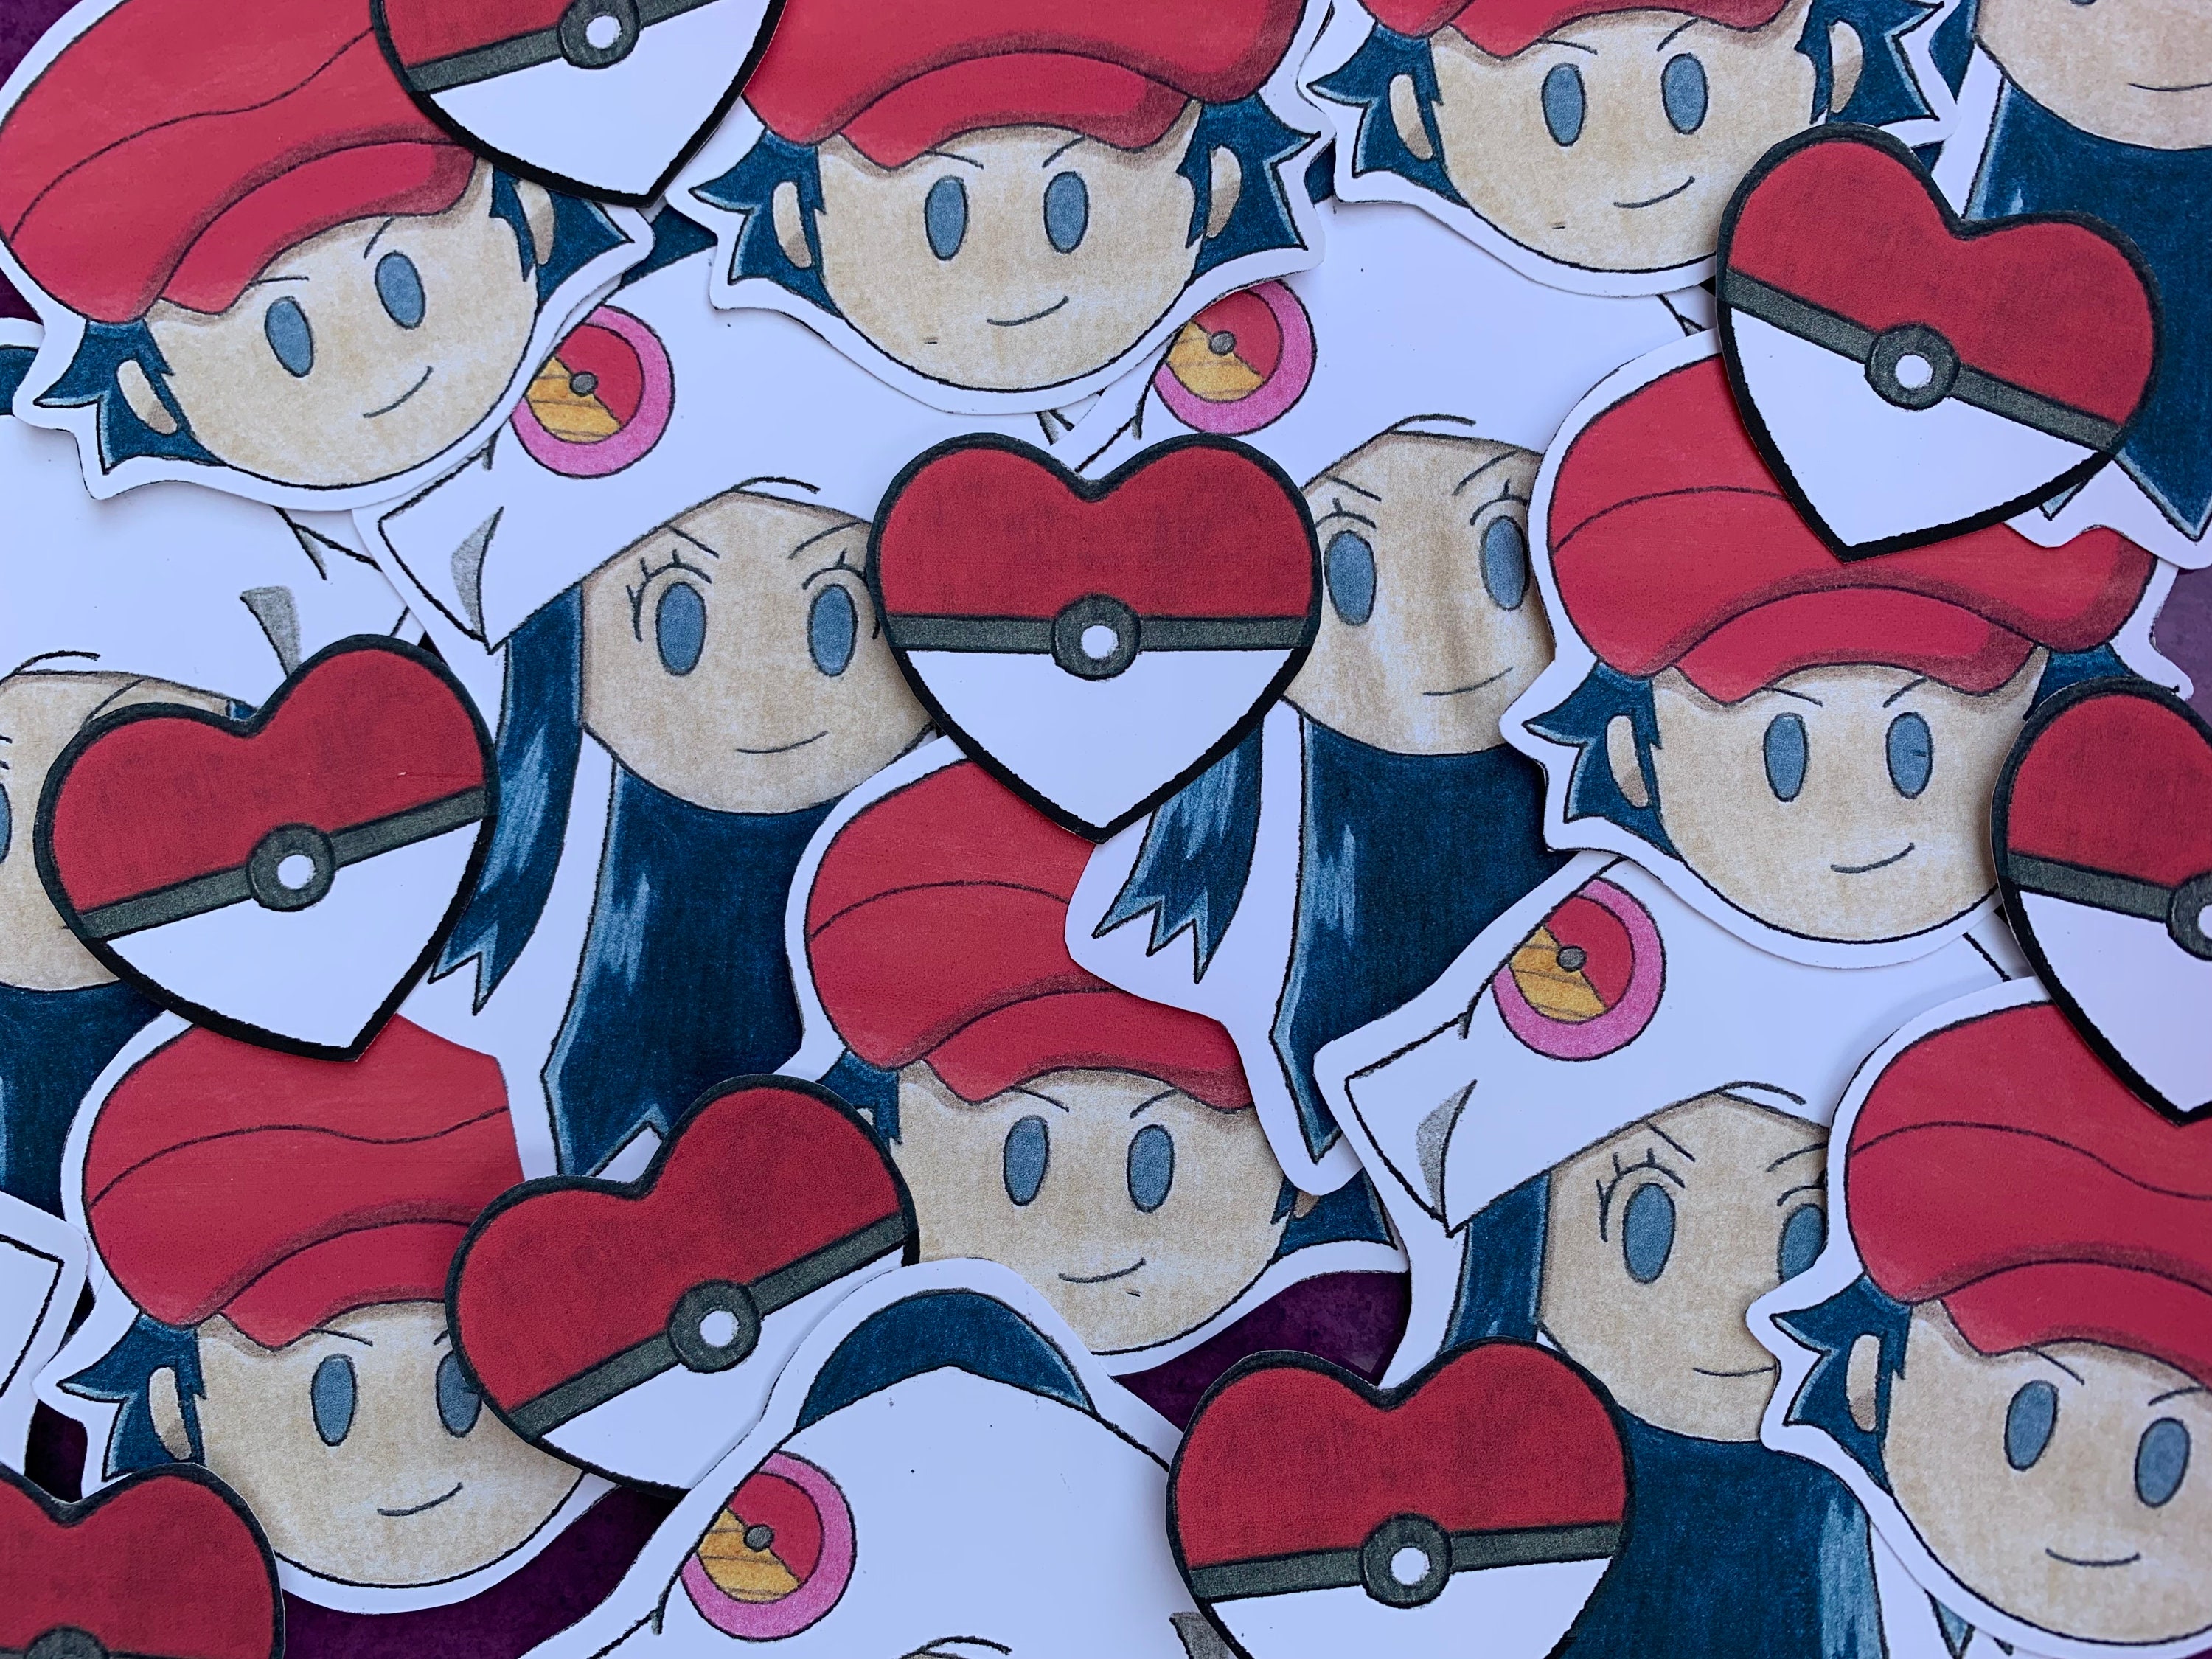 Pokéheart Sticker Pokémon Pokéball Inspired Heart Shaped Etsy